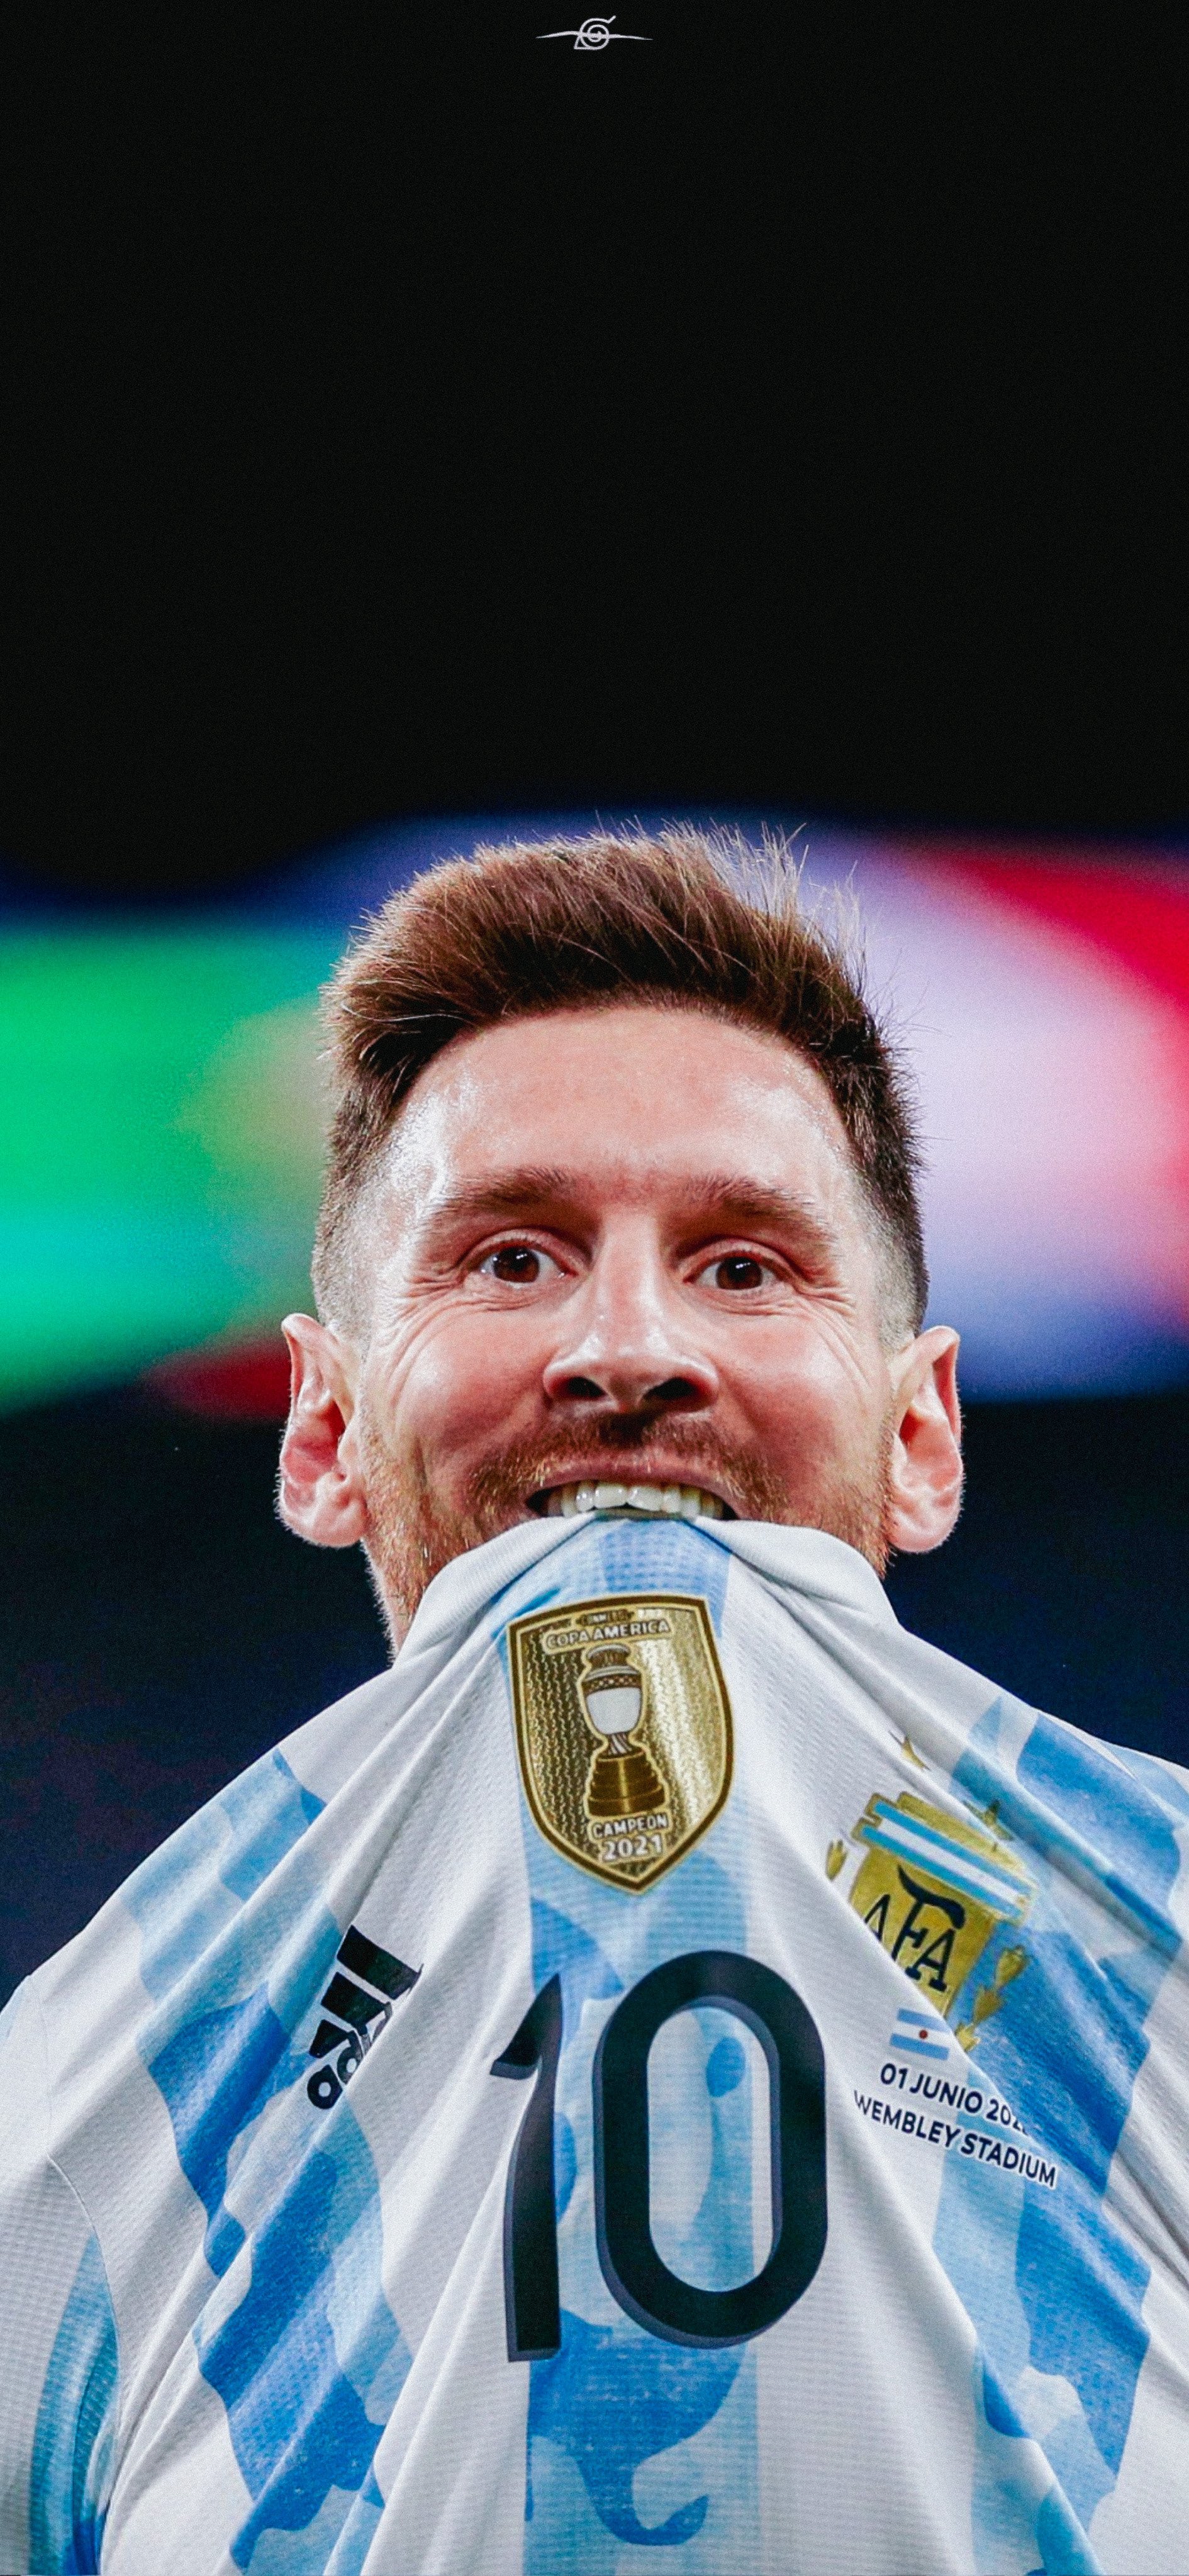 Hình nền Lionel Messi Finalissima - Bạn có yêu thích Messi và bóng đá châu Âu? Hãy tận hưởng Finalissima với bức ảnh nền này. Với chi tiết chân thực và màu sắc đậm nét, chỉ cần nhìn vào bức ảnh bạn sẽ cảm nhận được sự hồi hộp và đầy cảm xúc trước màn hình máy tính của mình. Bức ảnh nền Finalissima này chắc chắn sẽ khiến bạn chìm đắm vào thế giới của Messi và bóng đá châu Âu.